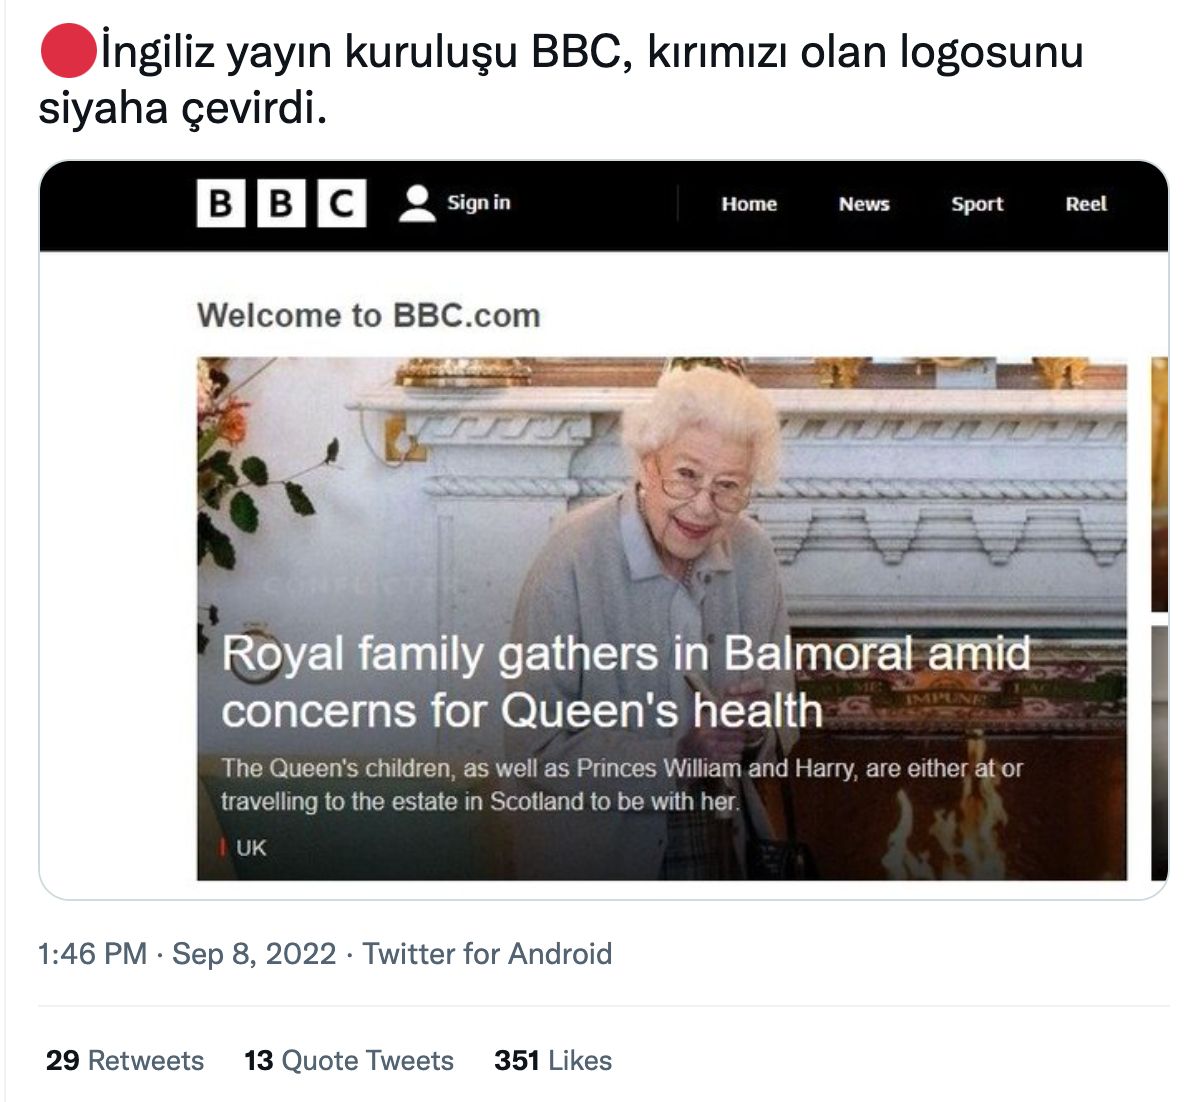 bbc logo siyaha cevrildigi iddiasi